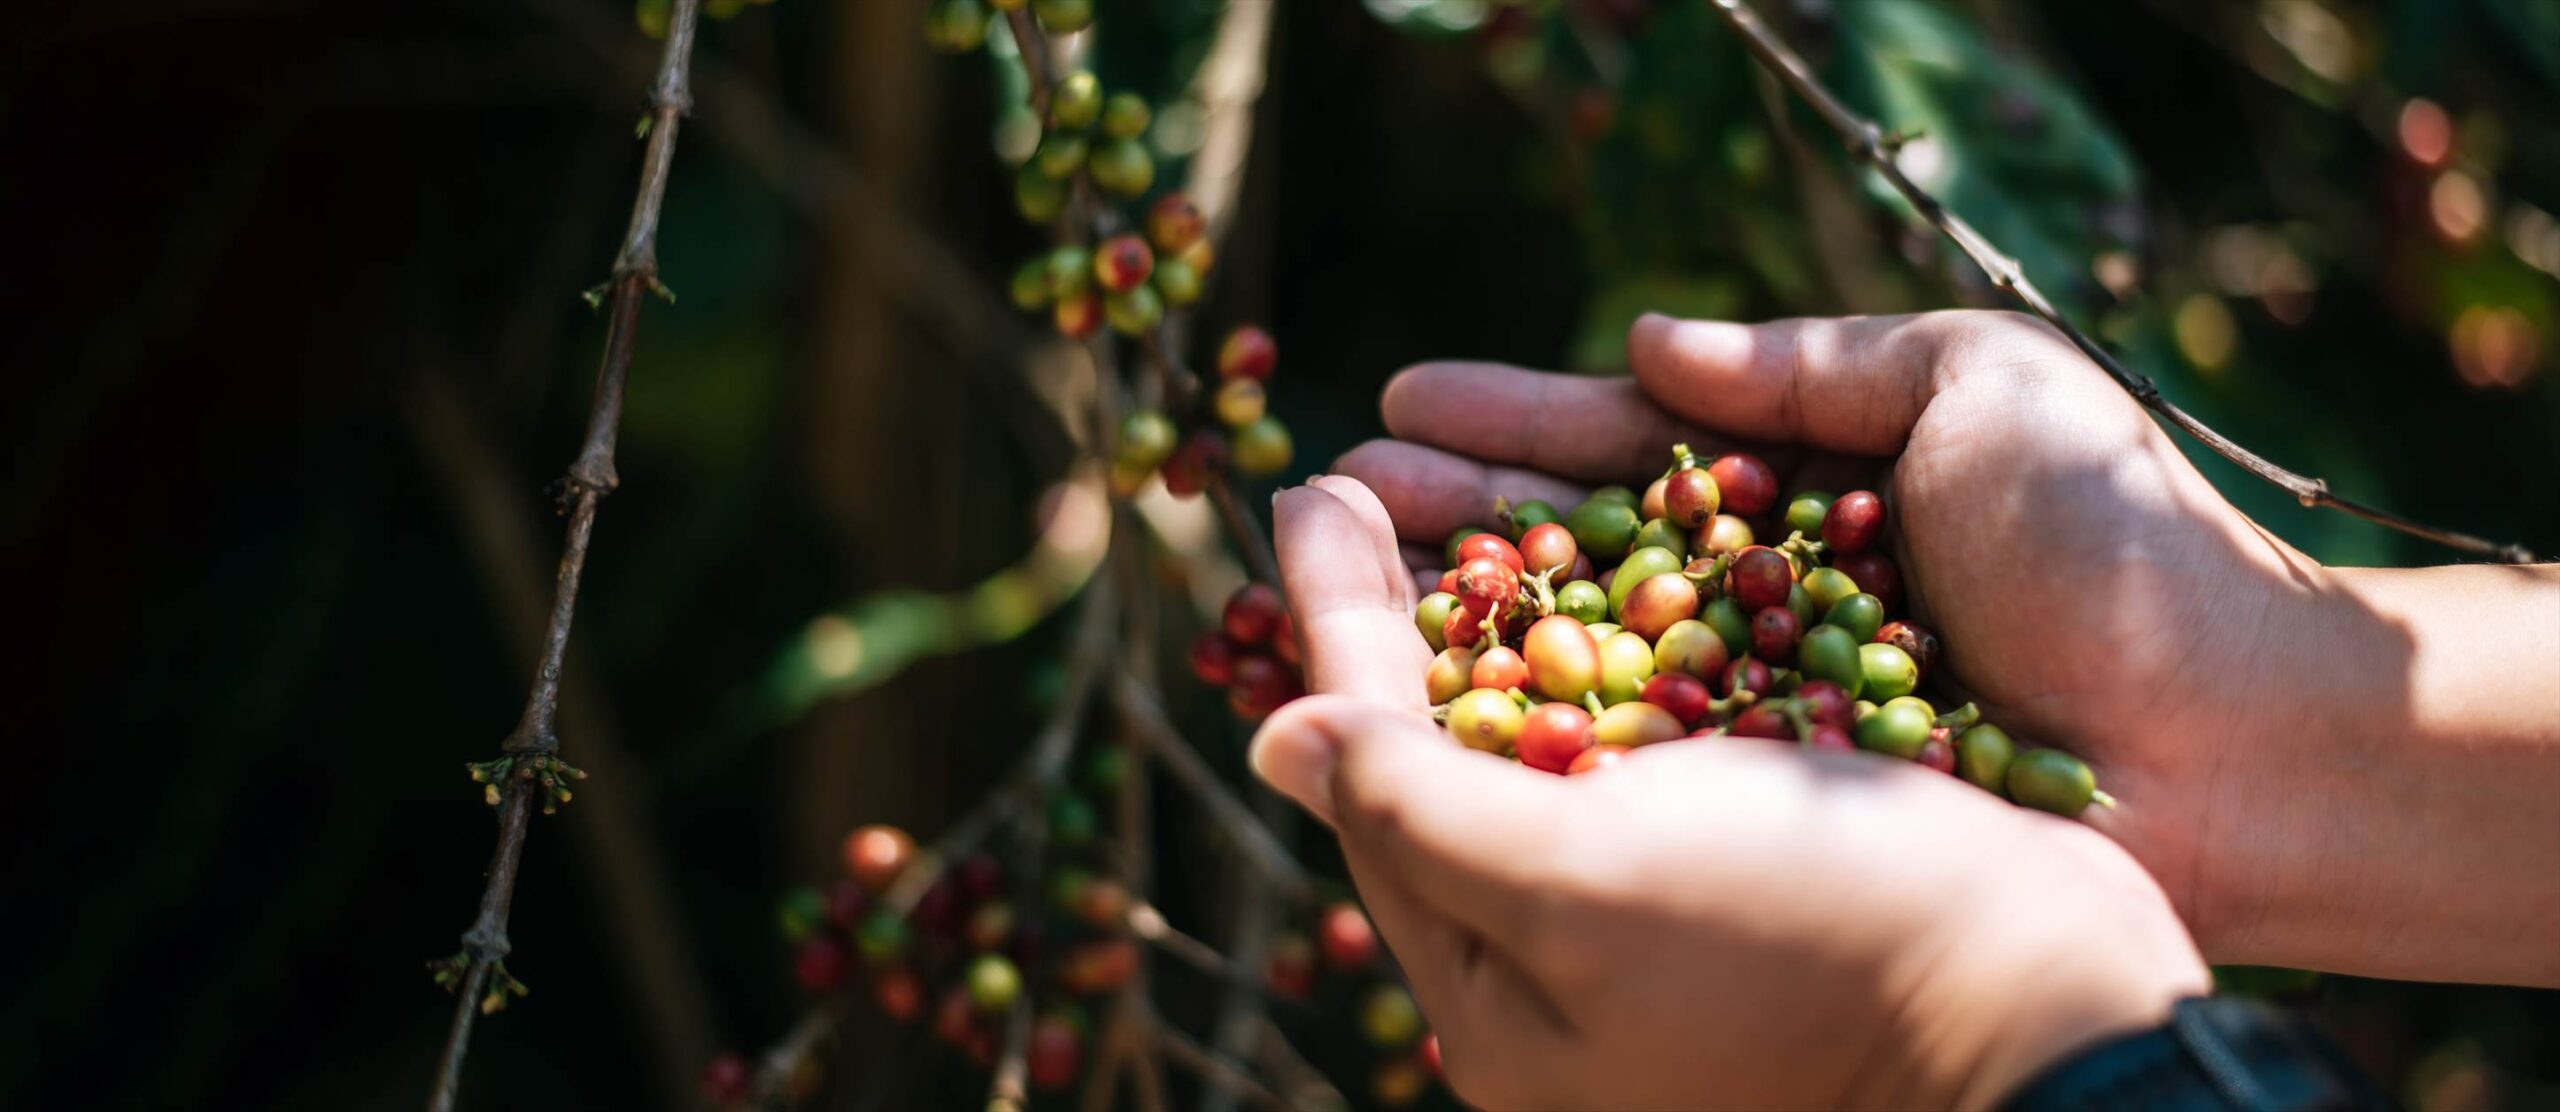 ベトナム産コーヒー豆の種類はロブスタ種が主な理由